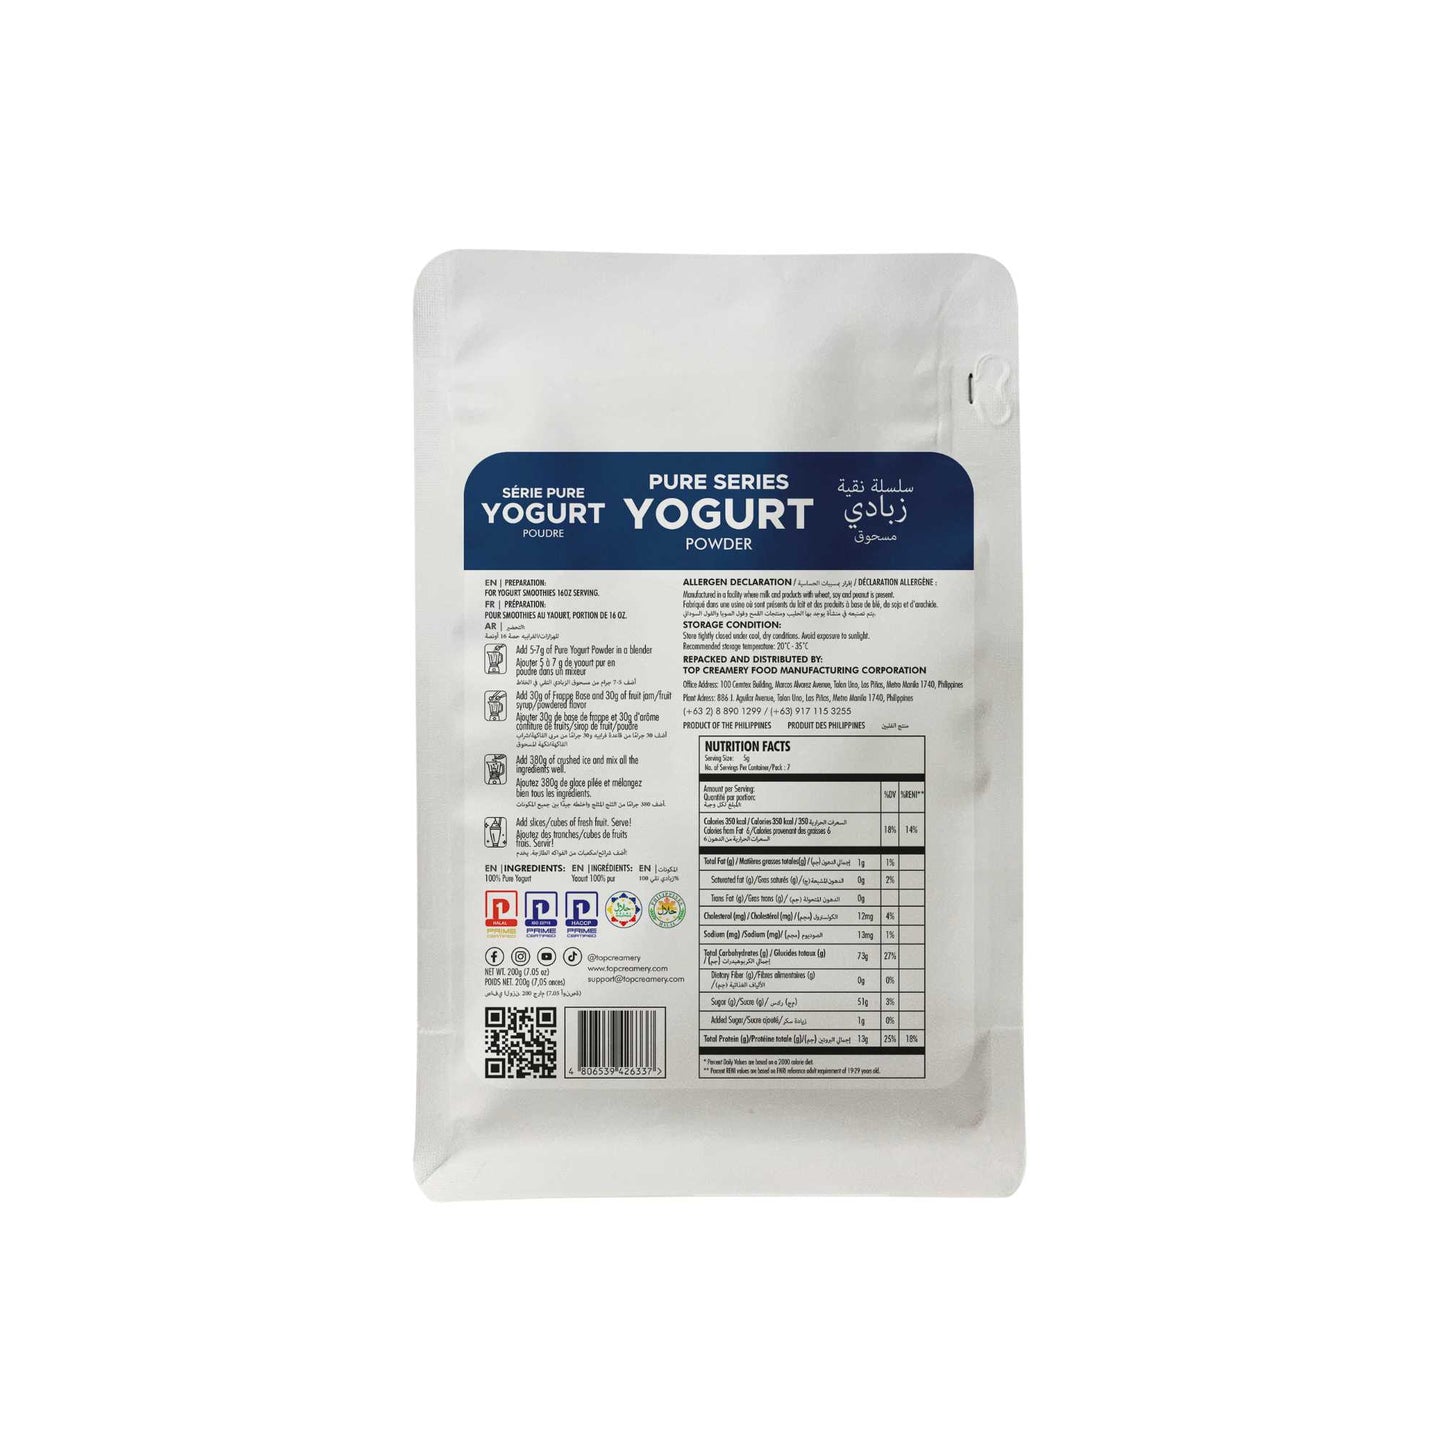 TOP Creamery Pure Yogurt Powder 200g